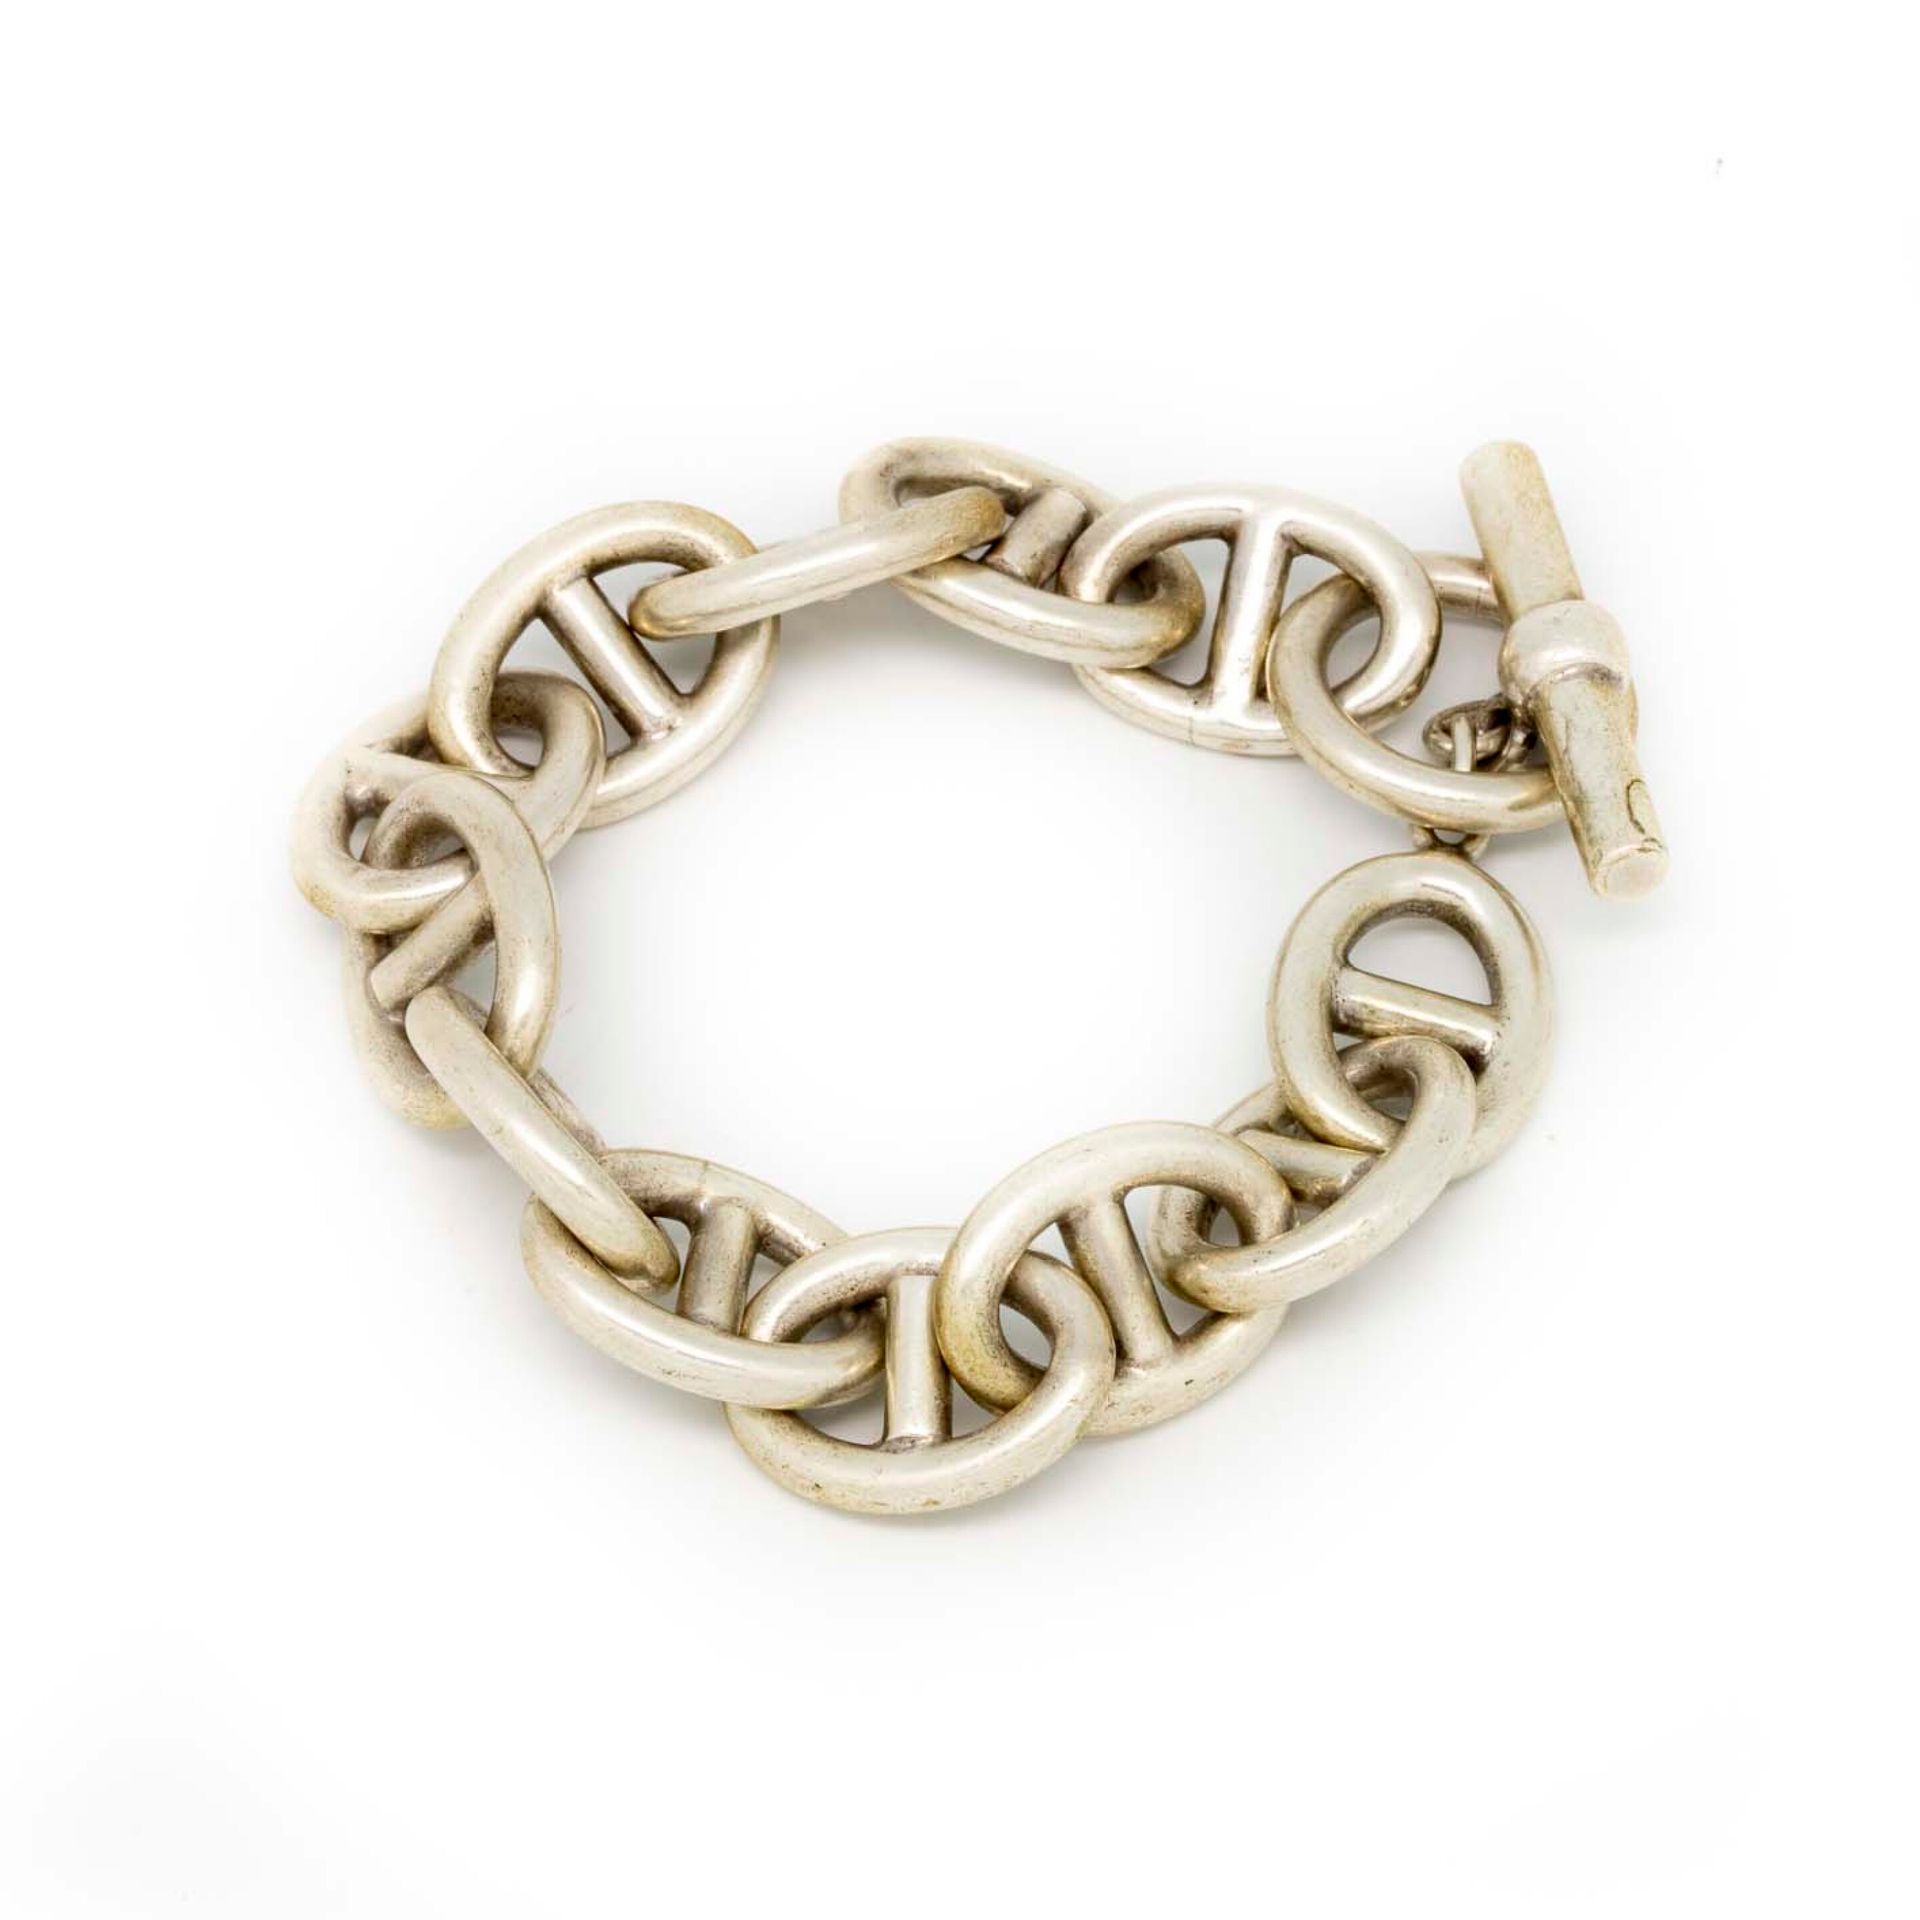 Null Curb in argento, anelli di catena di ancoraggio

Peso: 90 g.